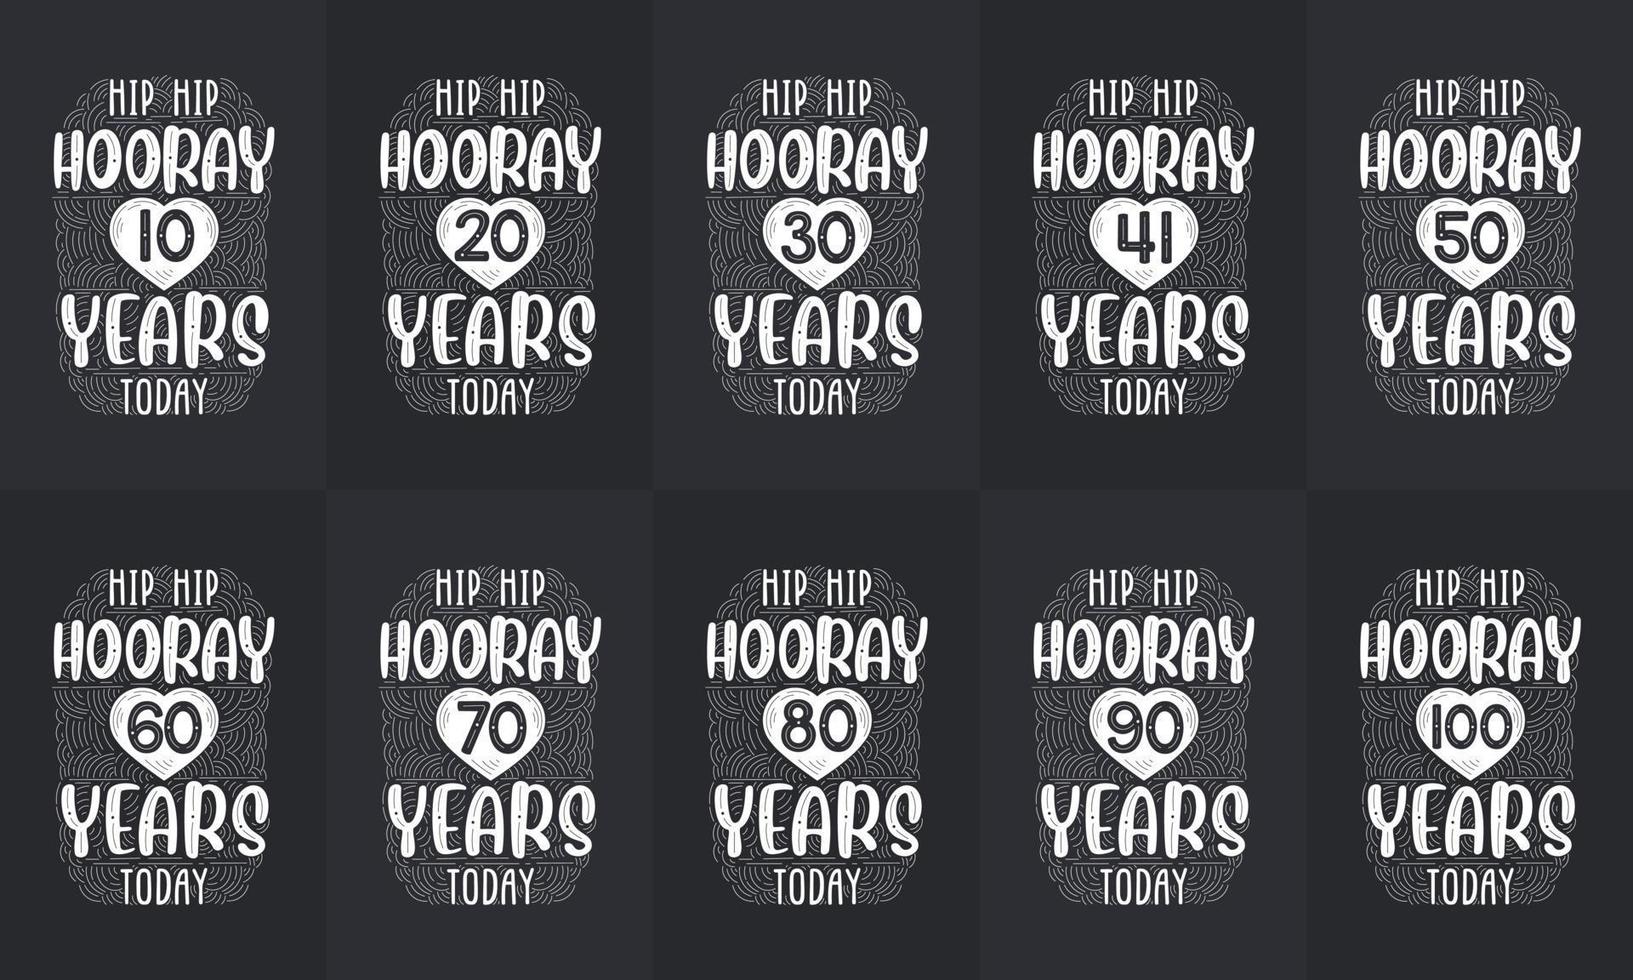 ensemble de conception de joyeux anniversaire. meilleur ensemble de conception de devis de typographie d'anniversaire. hip hip hourra 10, 18, 20, 30, 40, 50, 60, 70, 80, 90, 100 ans aujourd'hui vecteur